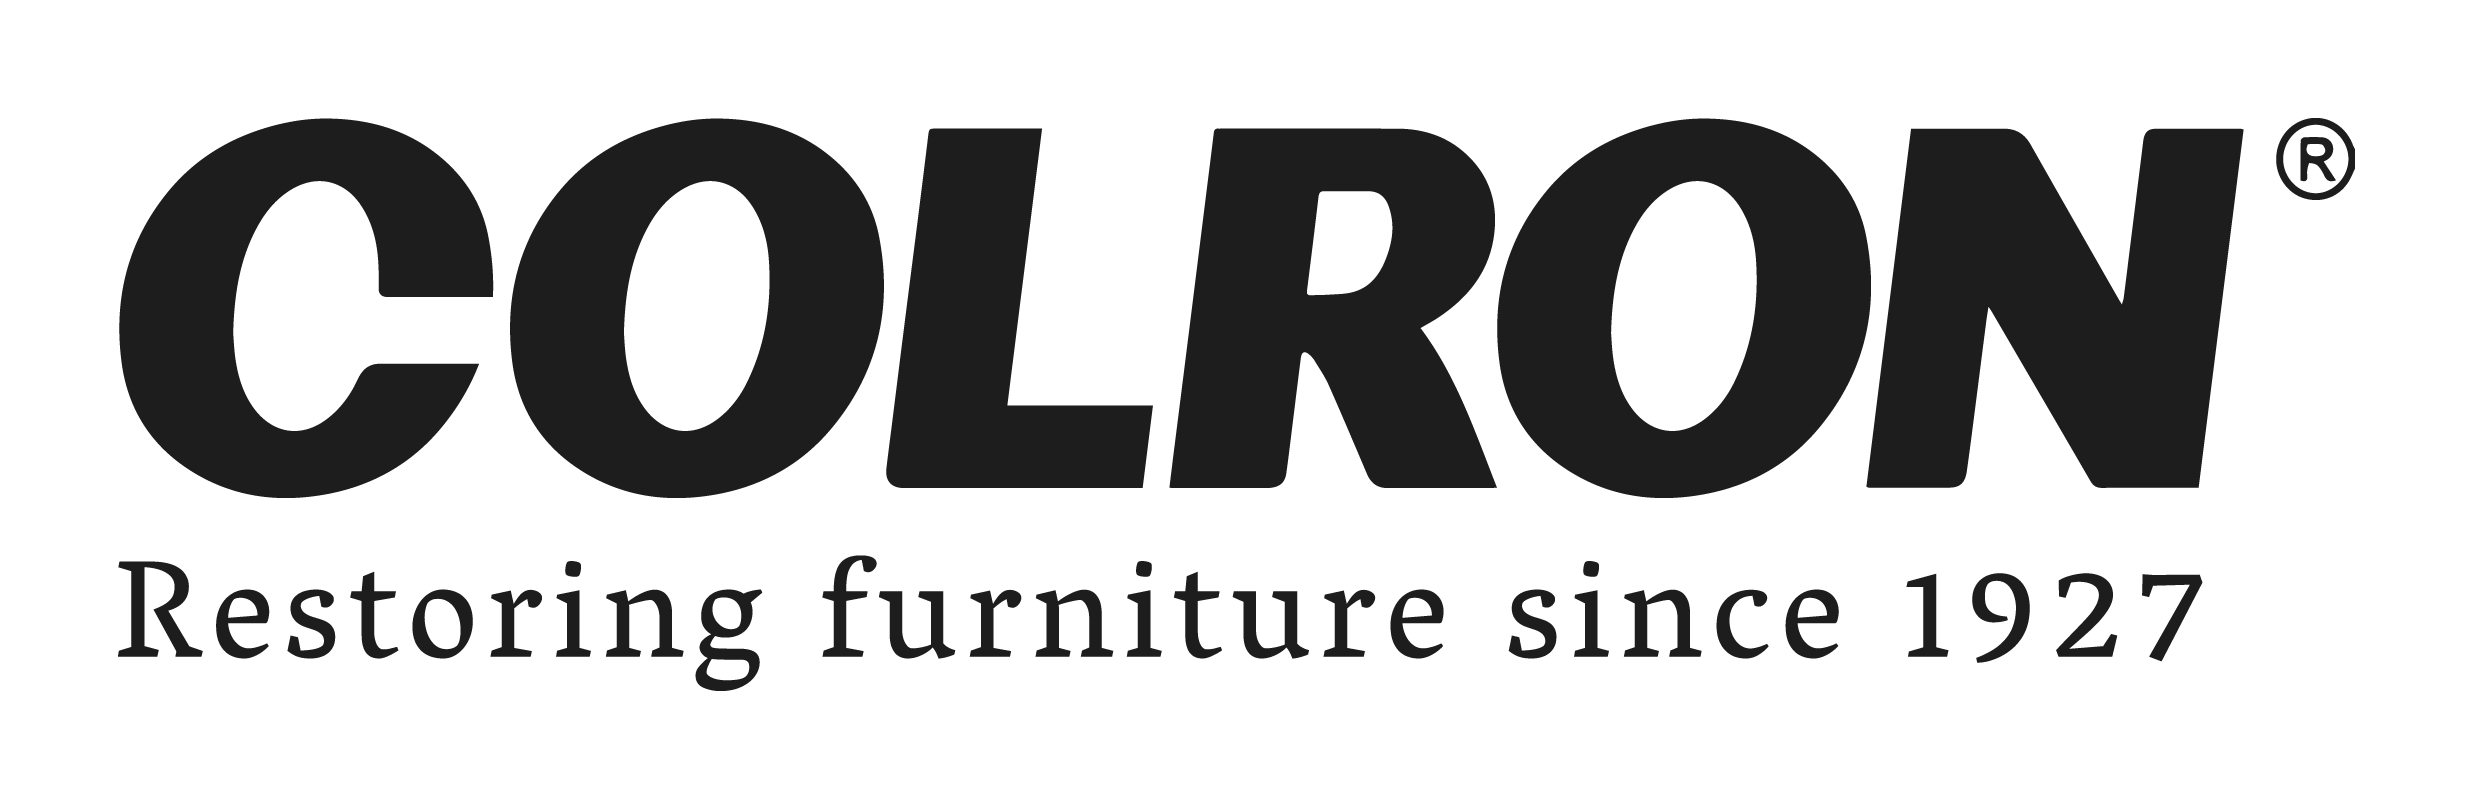 Colron logo BLACK.png